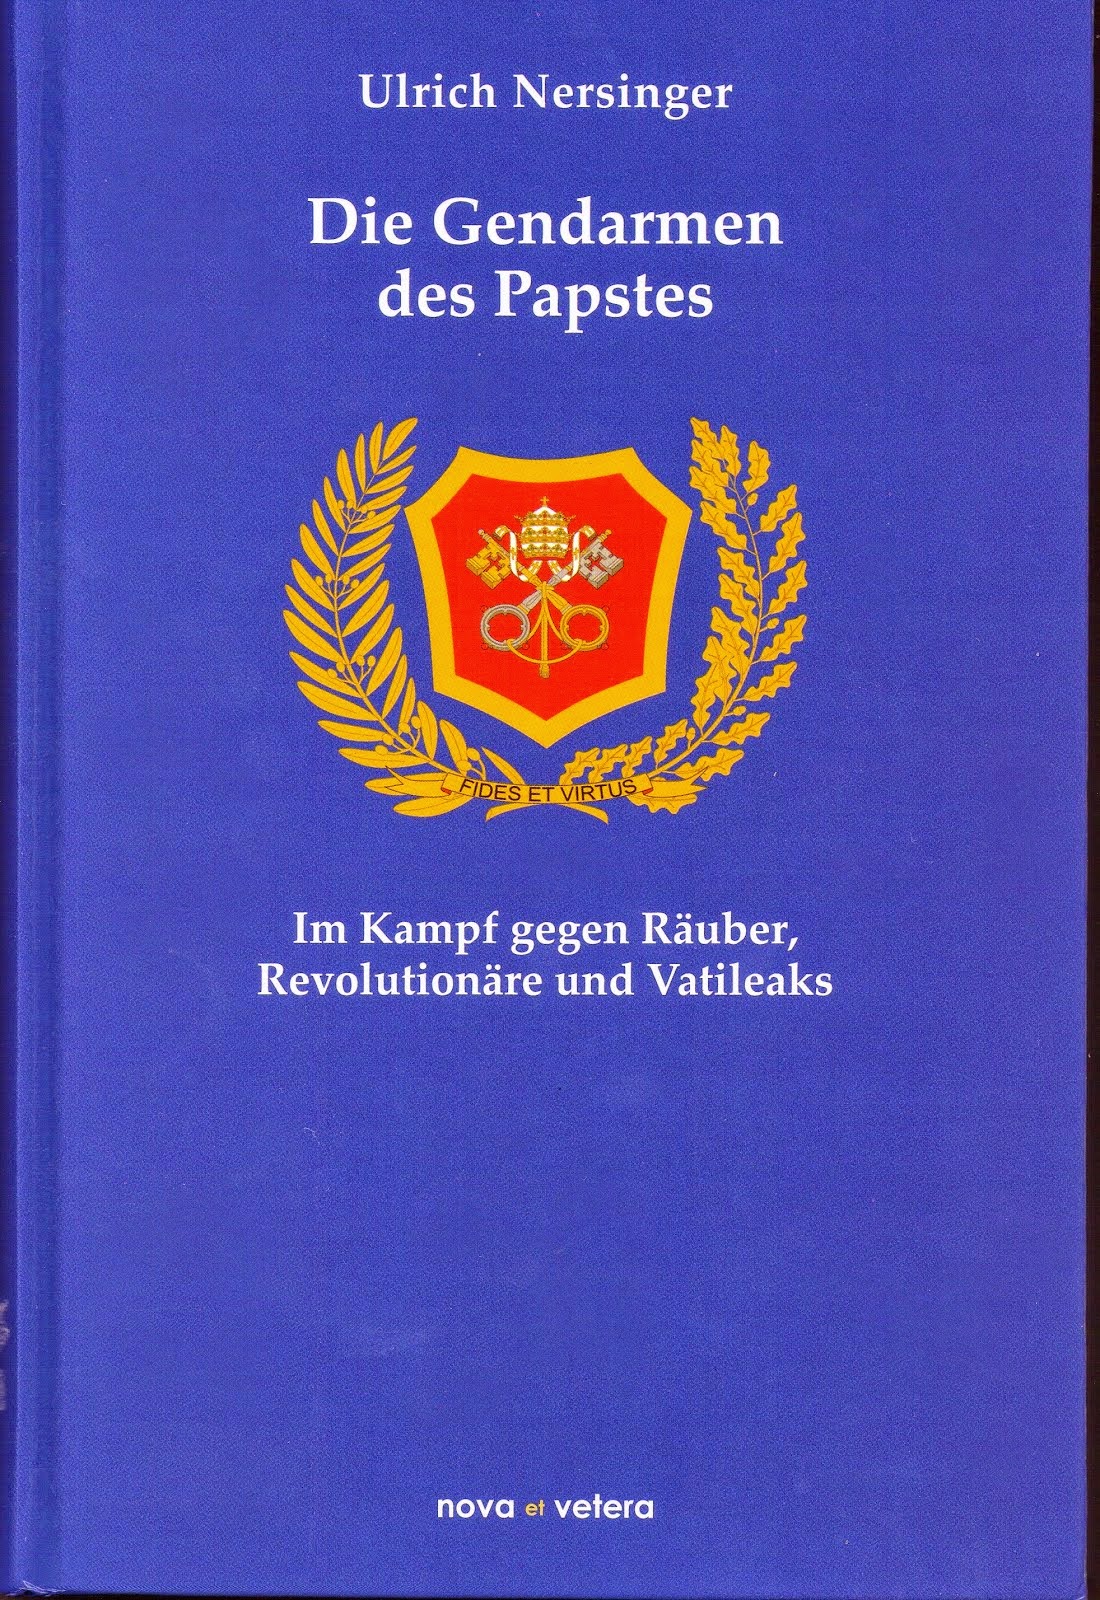 Volume dedicato ai Gendarmi del papa dalla fondazione ad oggi, in lingua tedesca